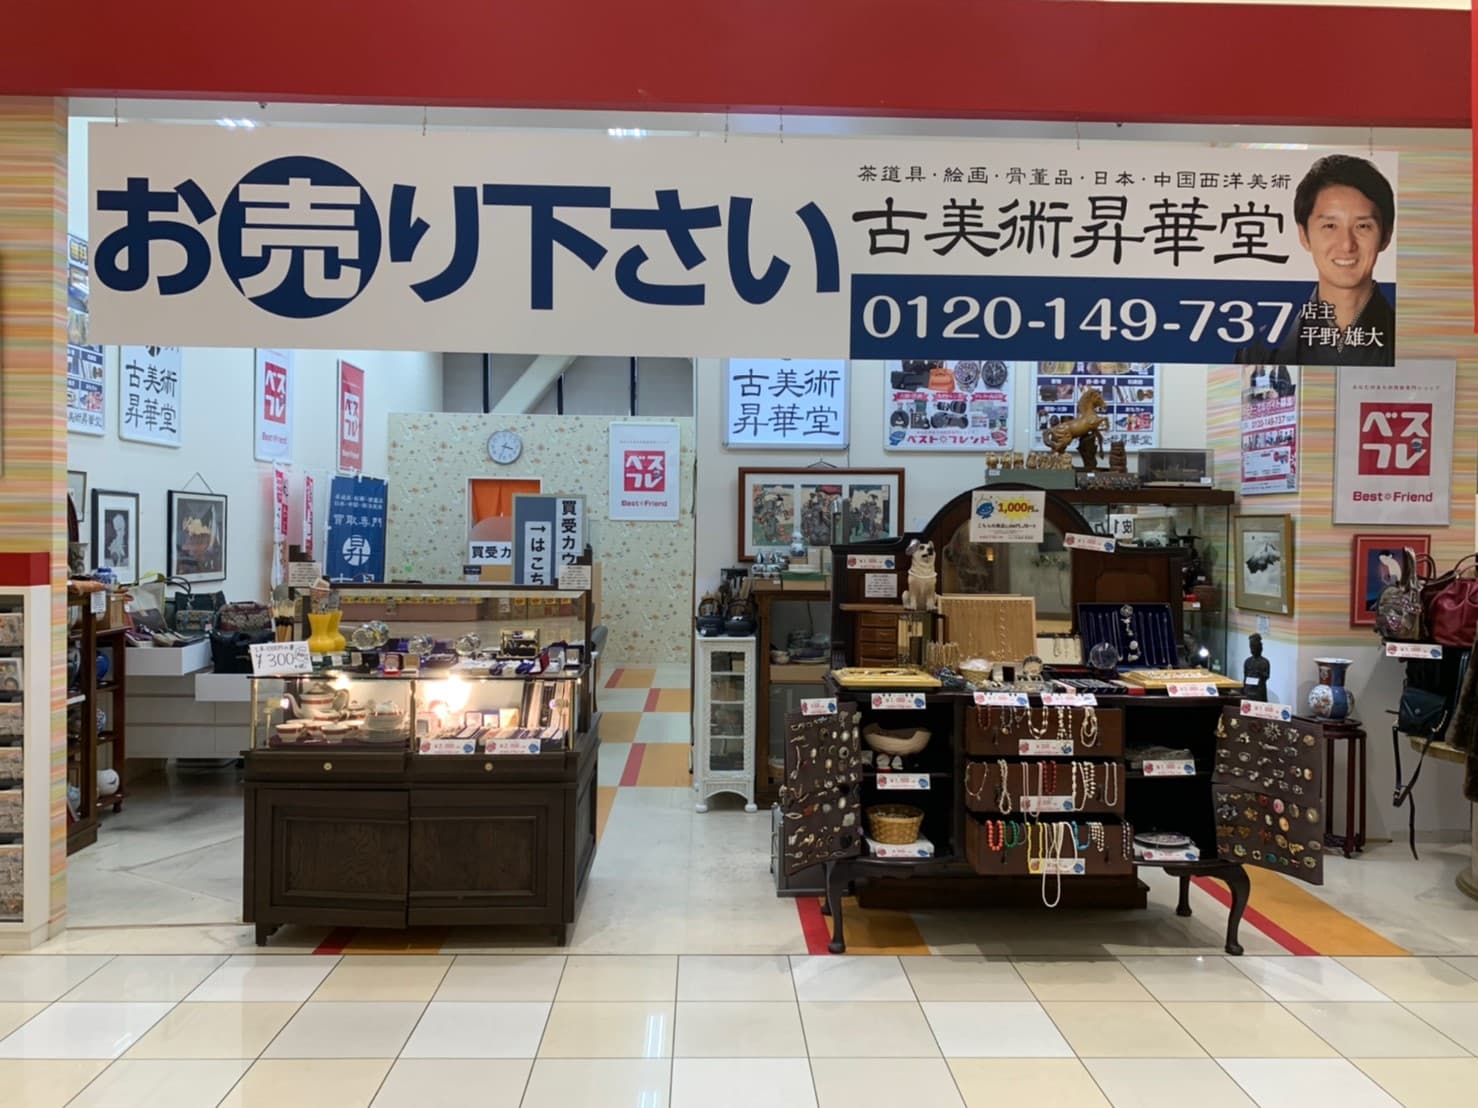 ベストフレンド昇華堂ヨシヅヤ名西店店舗写真2